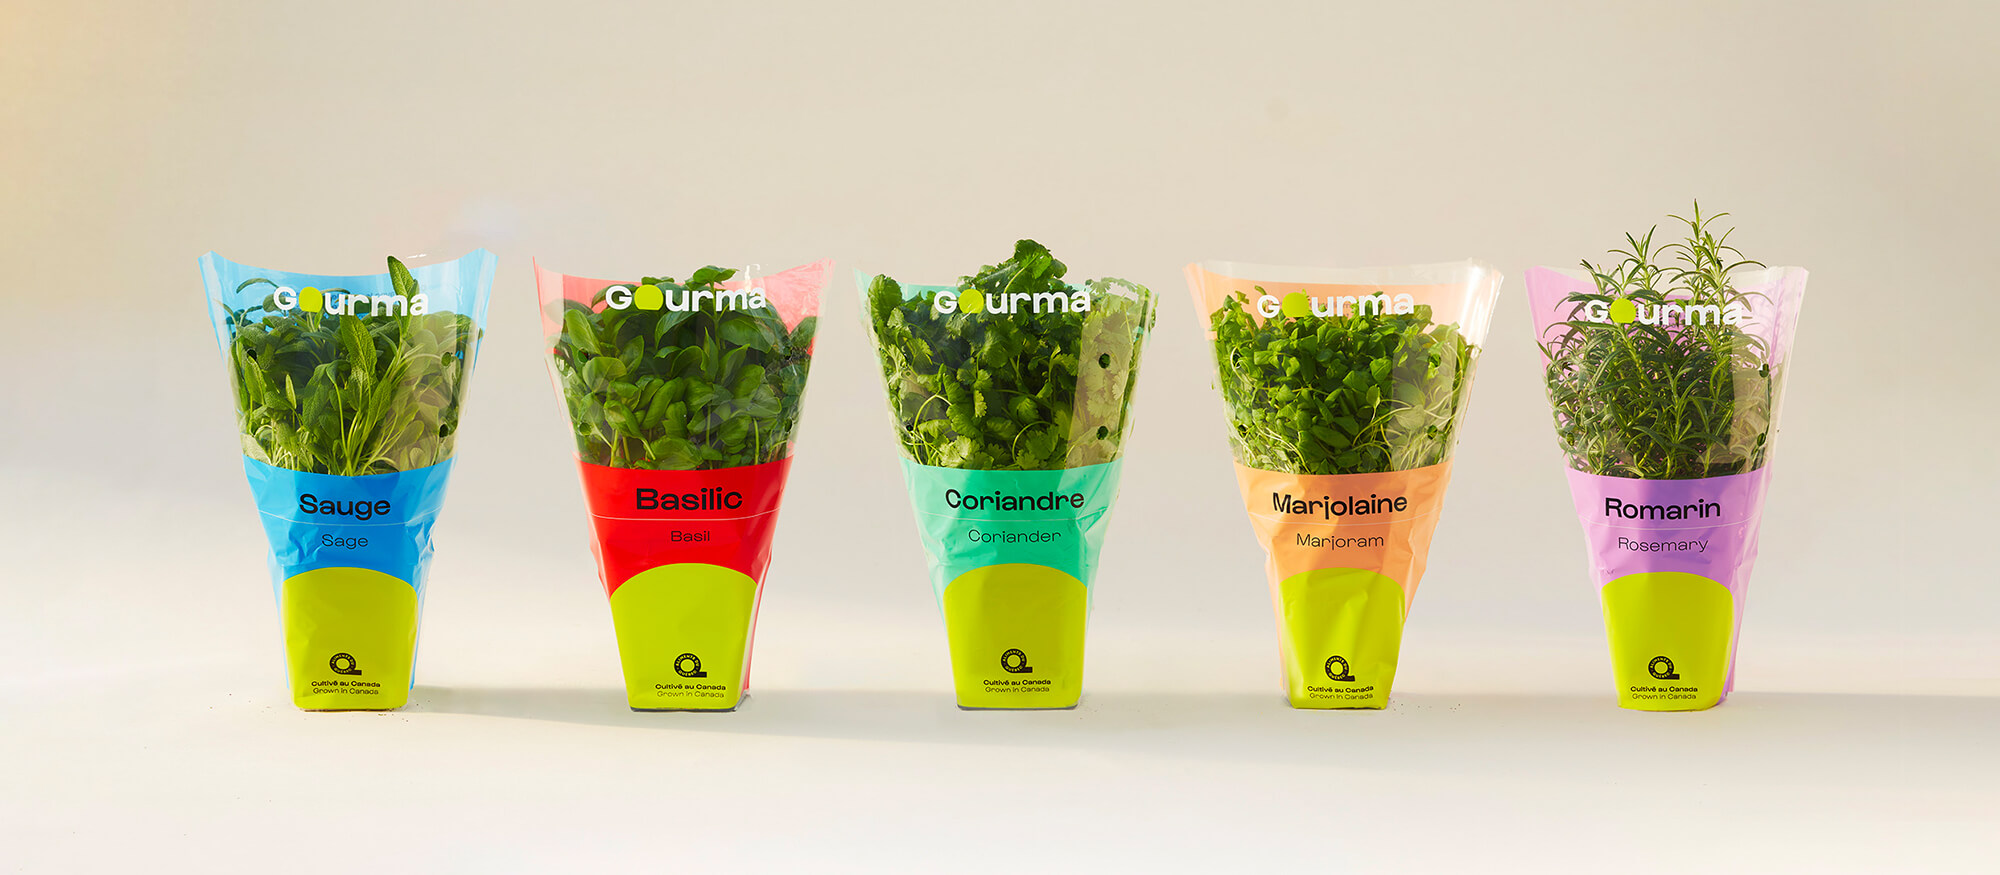 Herbes Gourma présentées dans leur emballage à code couleur